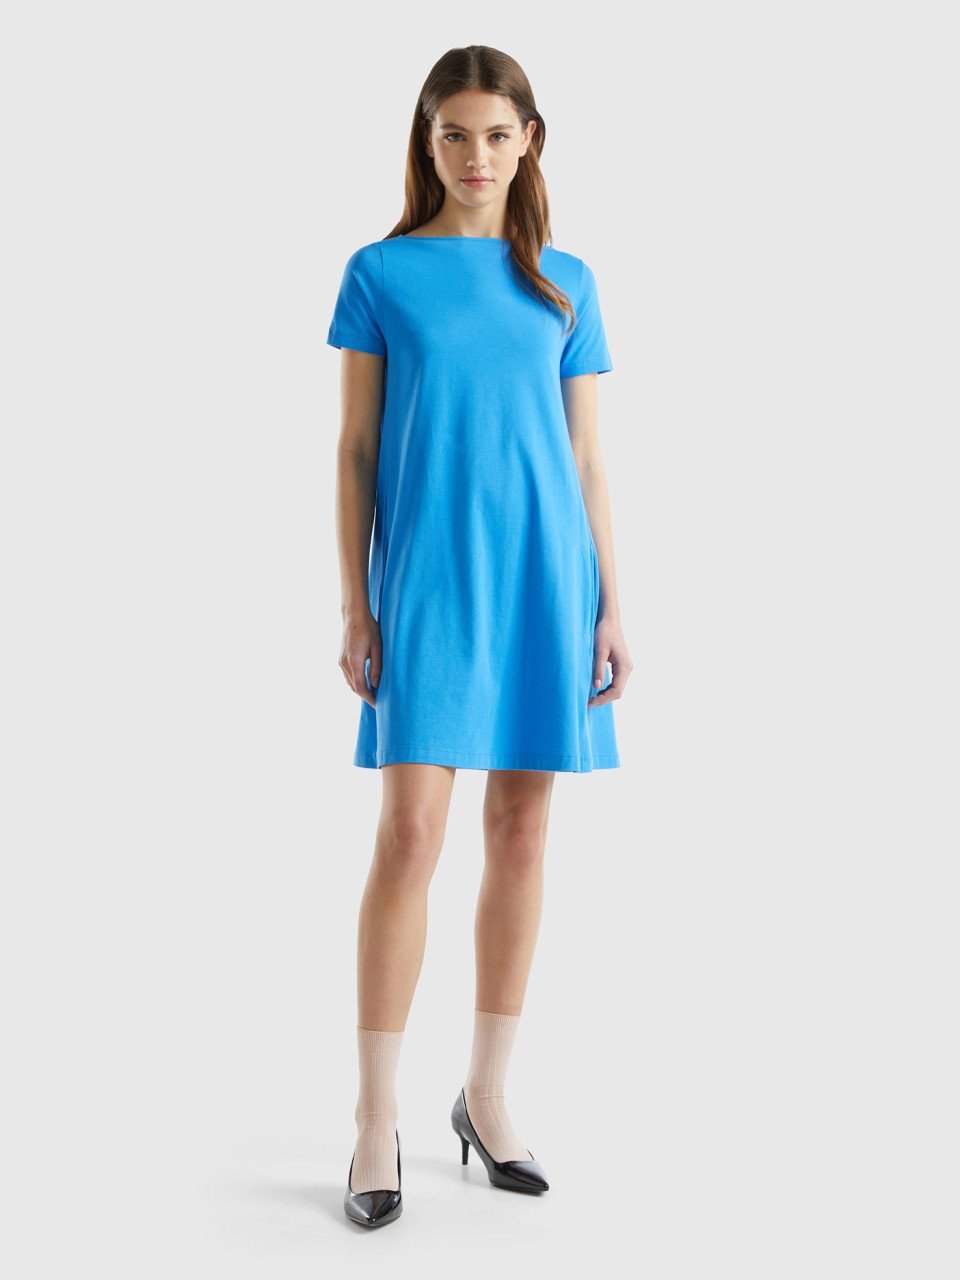 Benetton, Short Flared Dress, Blue, Women